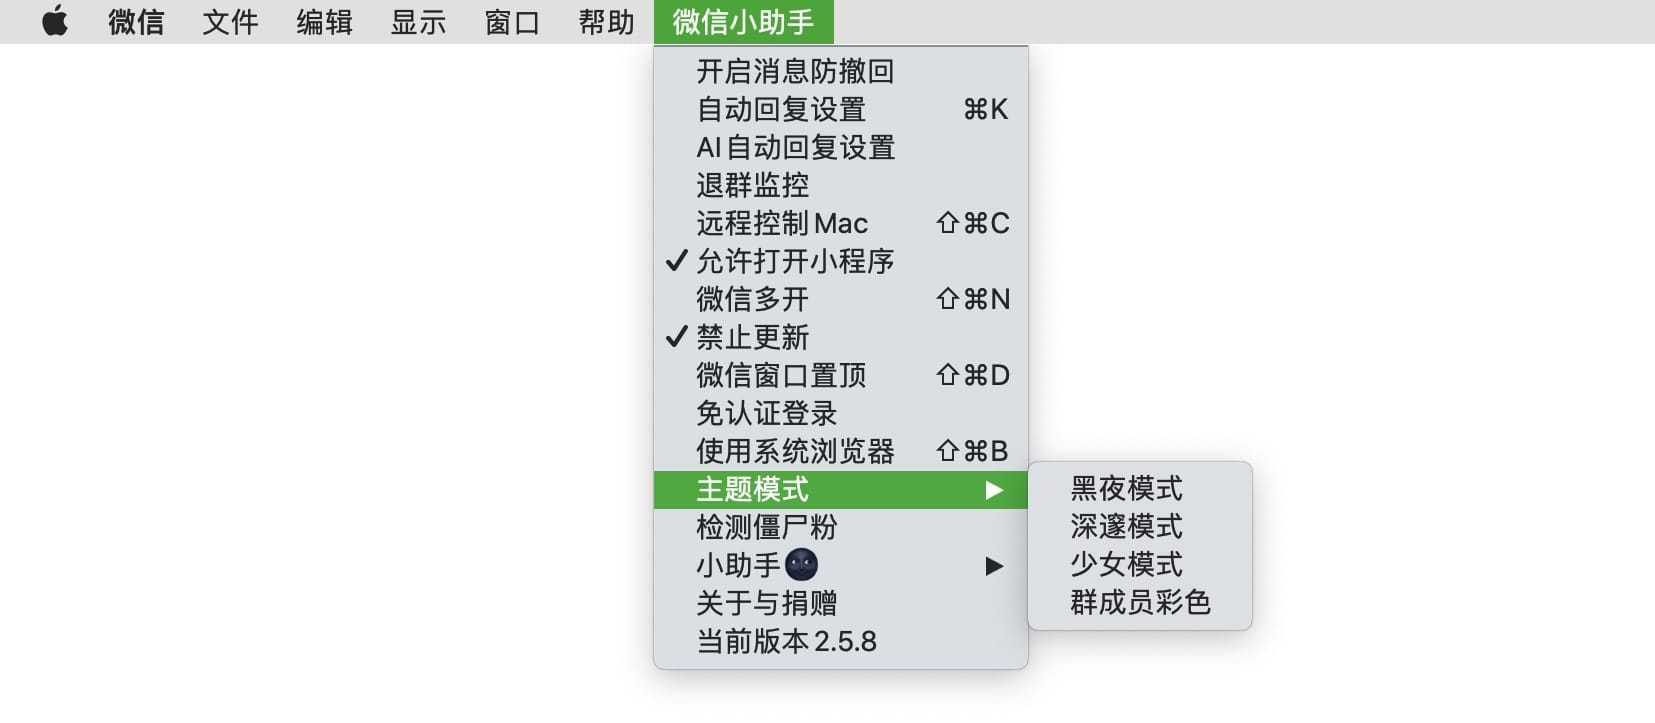 微信小助手 v2.8.3 for Mac 中文破解版 